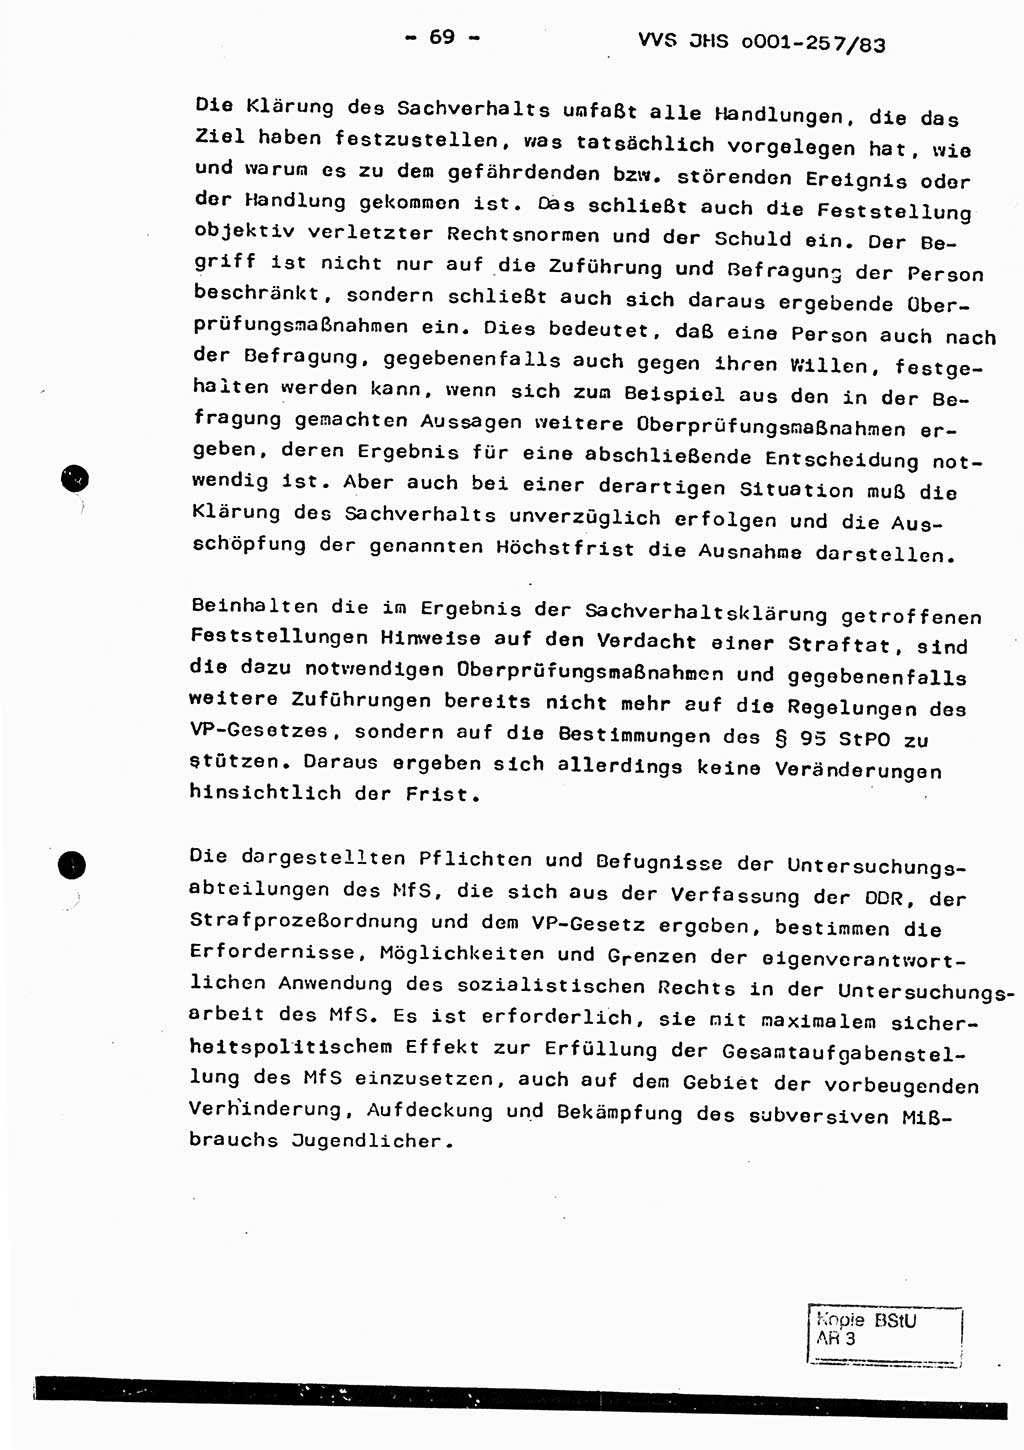 Dissertation, Oberst Helmut Lubas (BV Mdg.), Oberstleutnant Manfred Eschberger (HA IX), Oberleutnant Hans-Jürgen Ludwig (JHS), Ministerium für Staatssicherheit (MfS) [Deutsche Demokratische Republik (DDR)], Juristische Hochschule (JHS), Vertrauliche Verschlußsache (VVS) o001-257/83, Potsdam 1983, Seite 69 (Diss. MfS DDR JHS VVS o001-257/83 1983, S. 69)